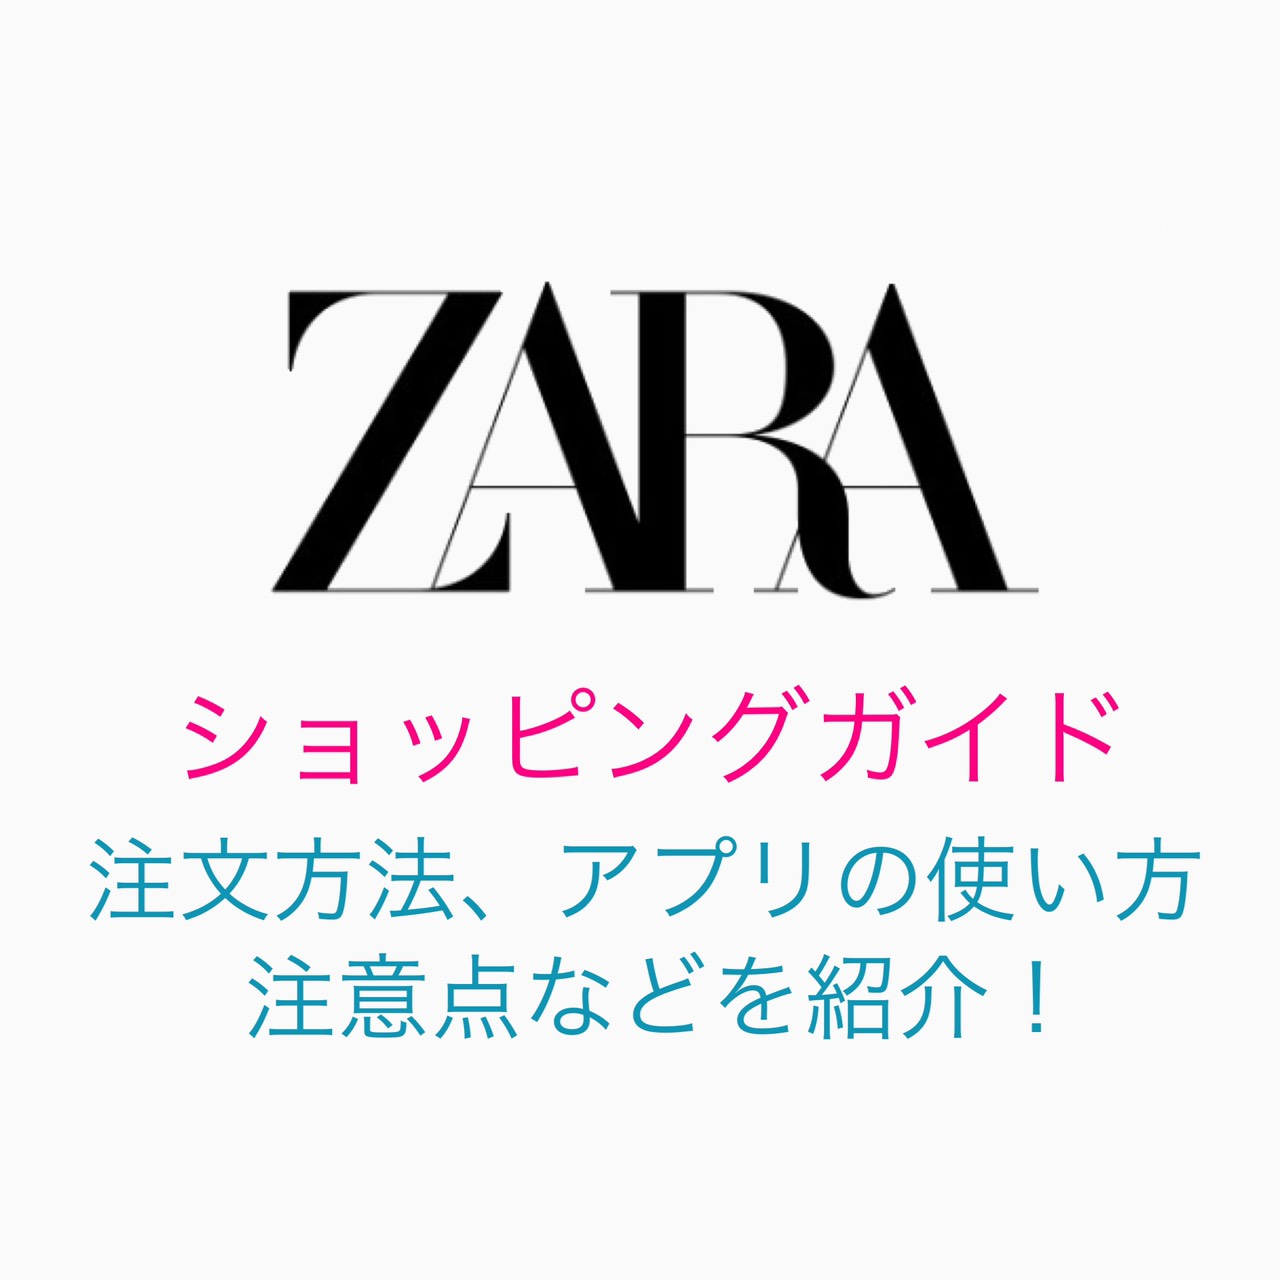 送料 無料 通販 zara 初めて使う人向け！ZARAオンラインでの買い方ショッピングガイド【注文方法・送料・注意点など】